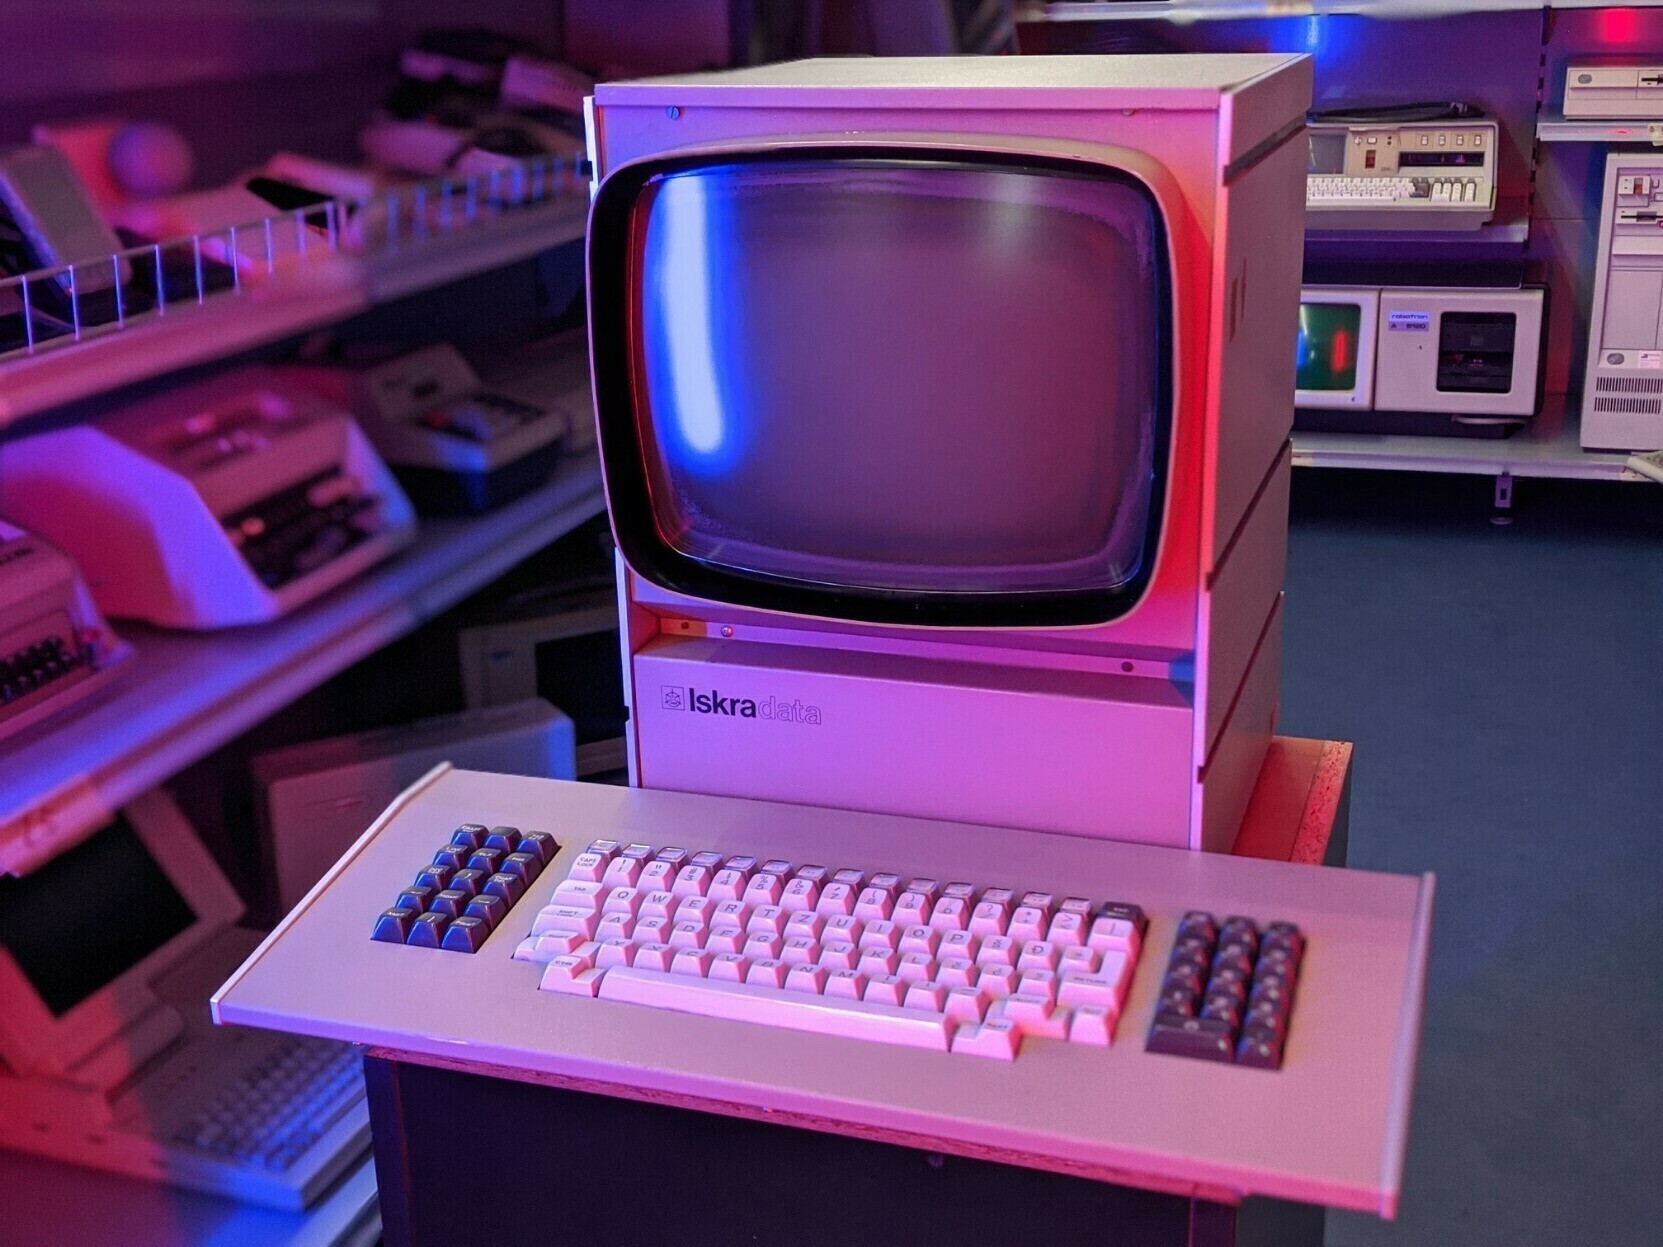 An Iskra computer